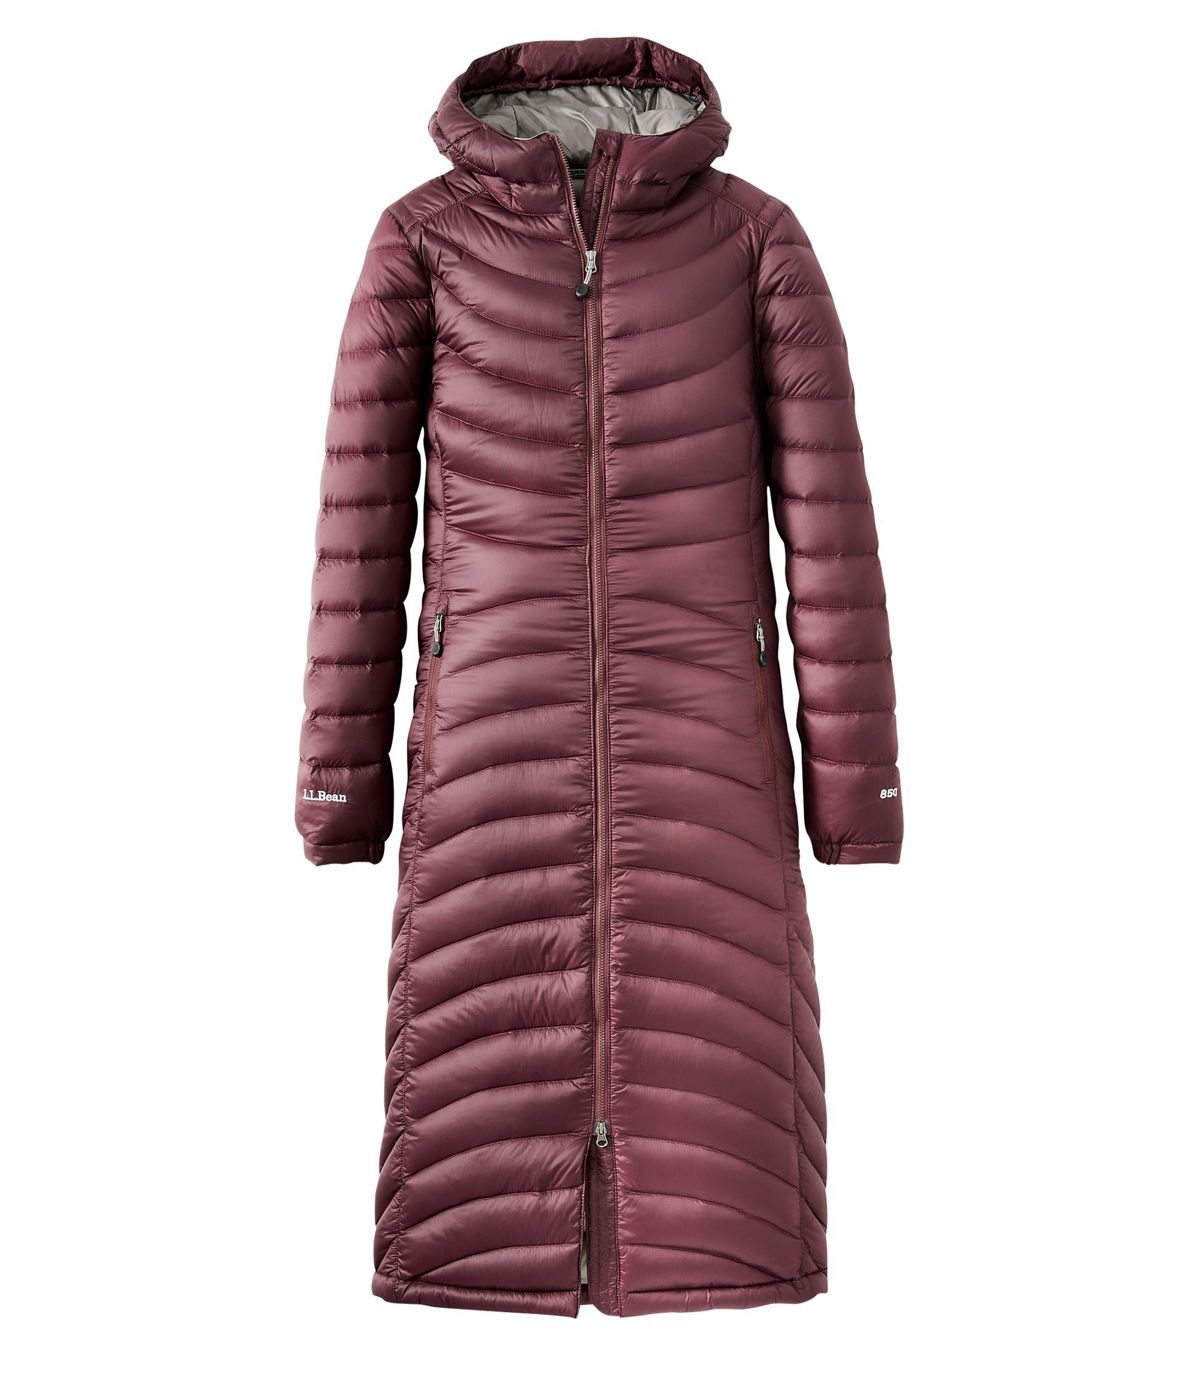 ZEFOTIM Women Ladies Slim Hooded Down Padded Long Winter Warm Parka Outwear Jacket Coat 